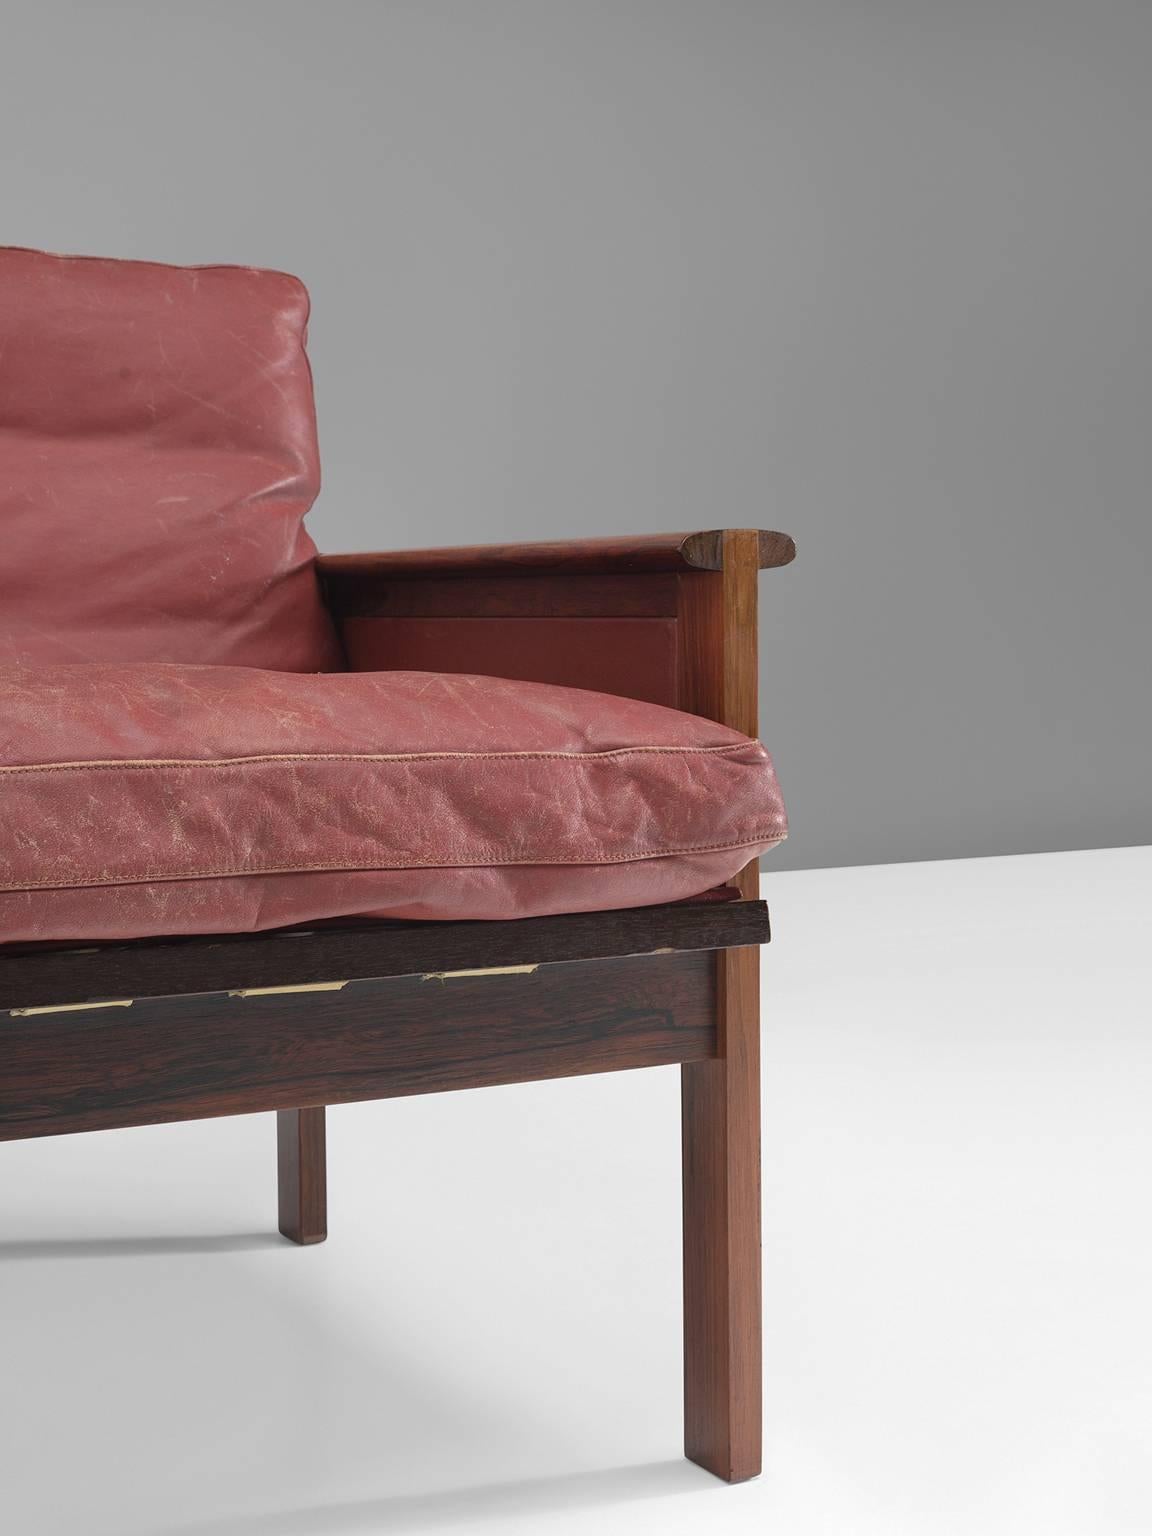 Danish Illum Wikkelsø 'Capella' Sofa in Original Red Leather and Rosewood